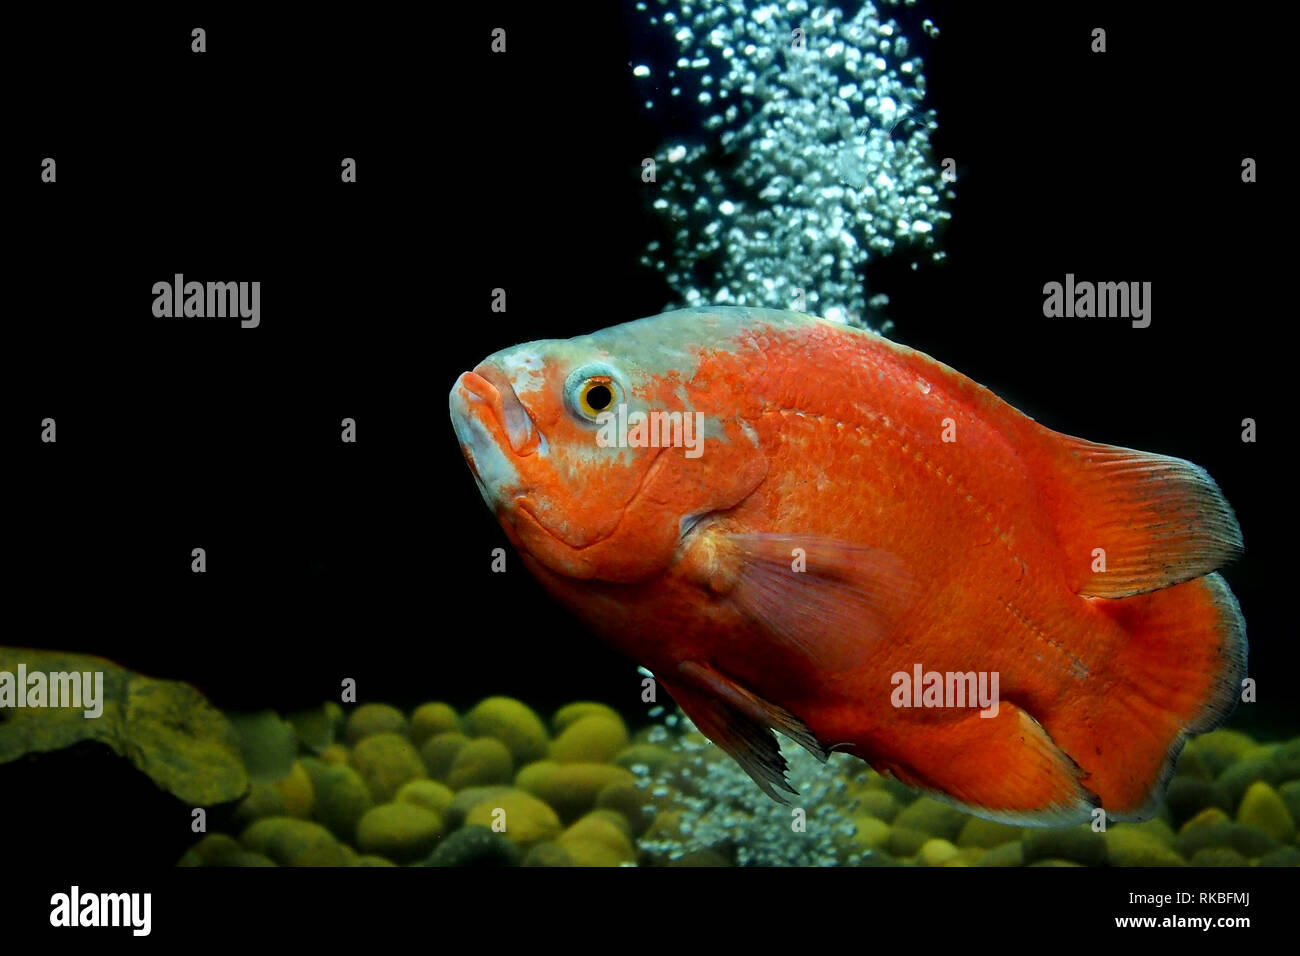 astronotus ocellatus or oscar fish in the aquarium Stock Photo